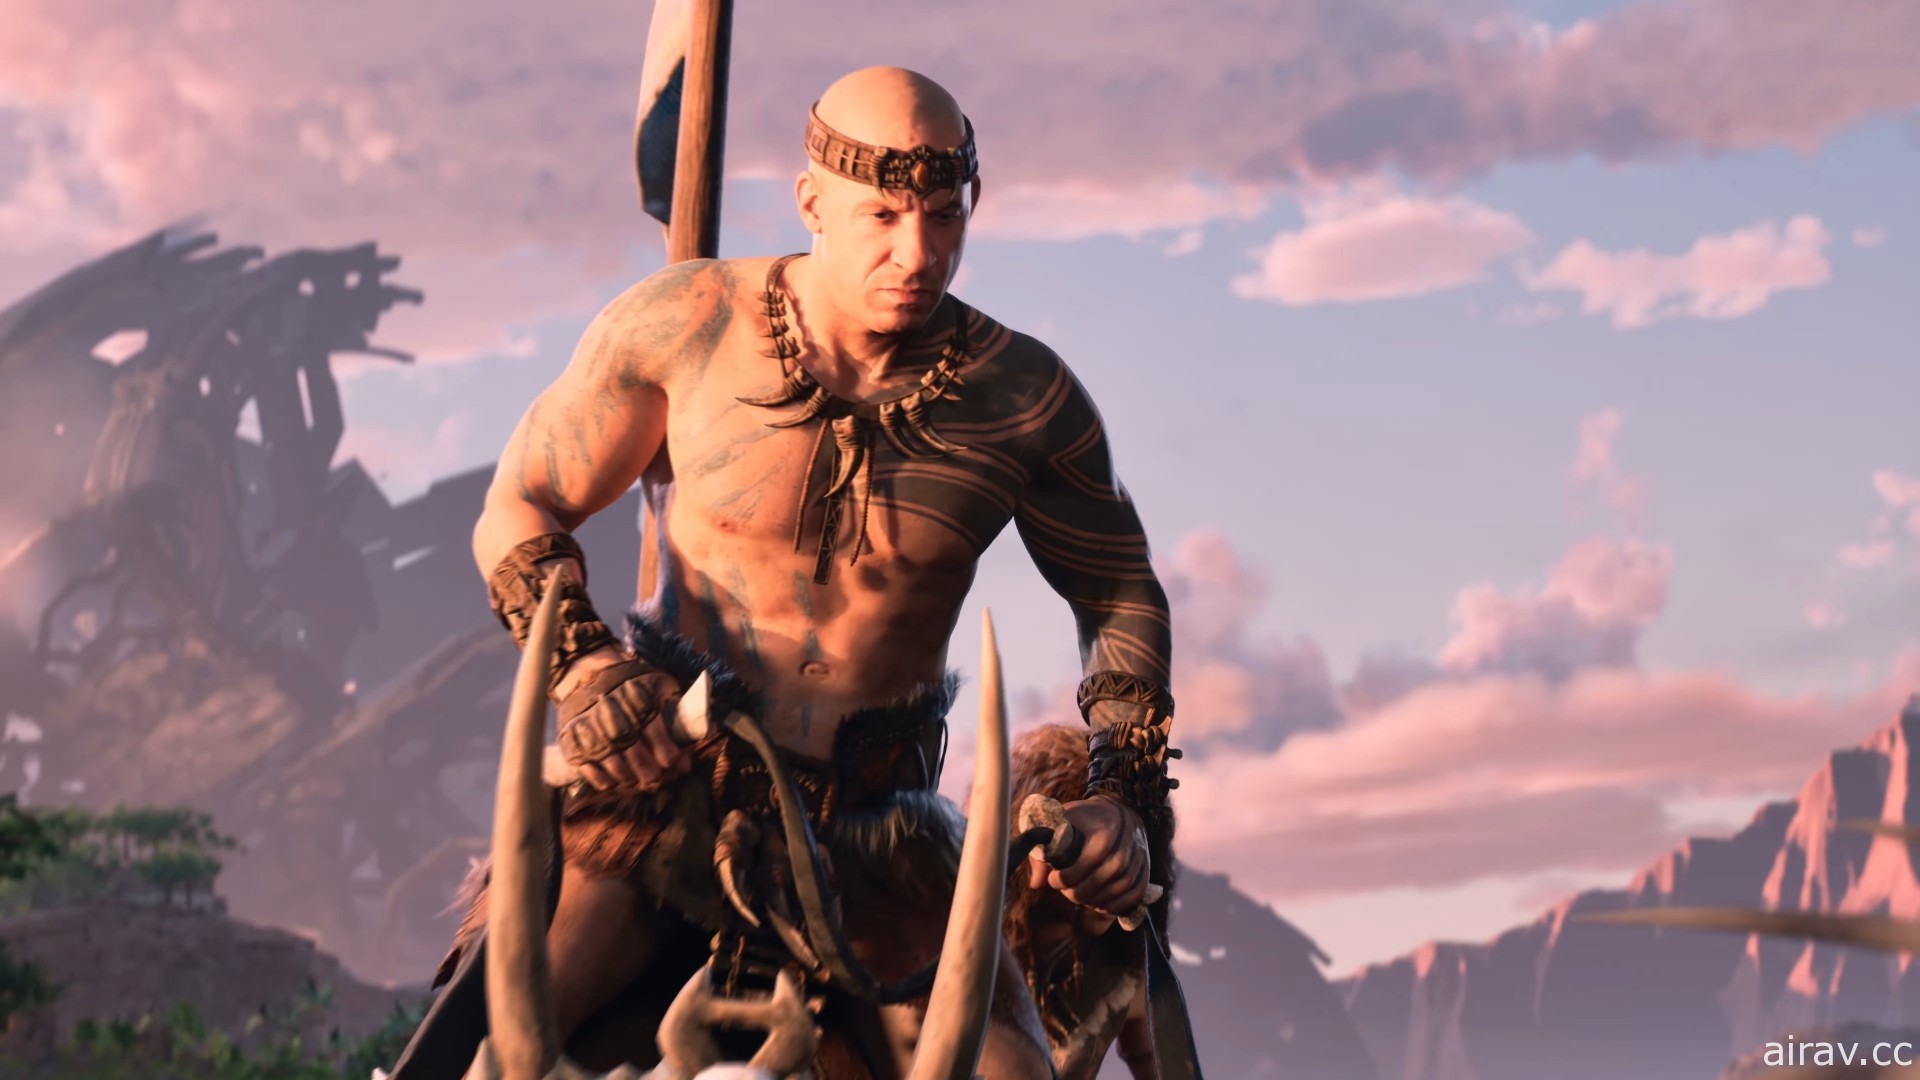 《方舟 2》释出最新宣传影片 游戏预定 2023 年内推出